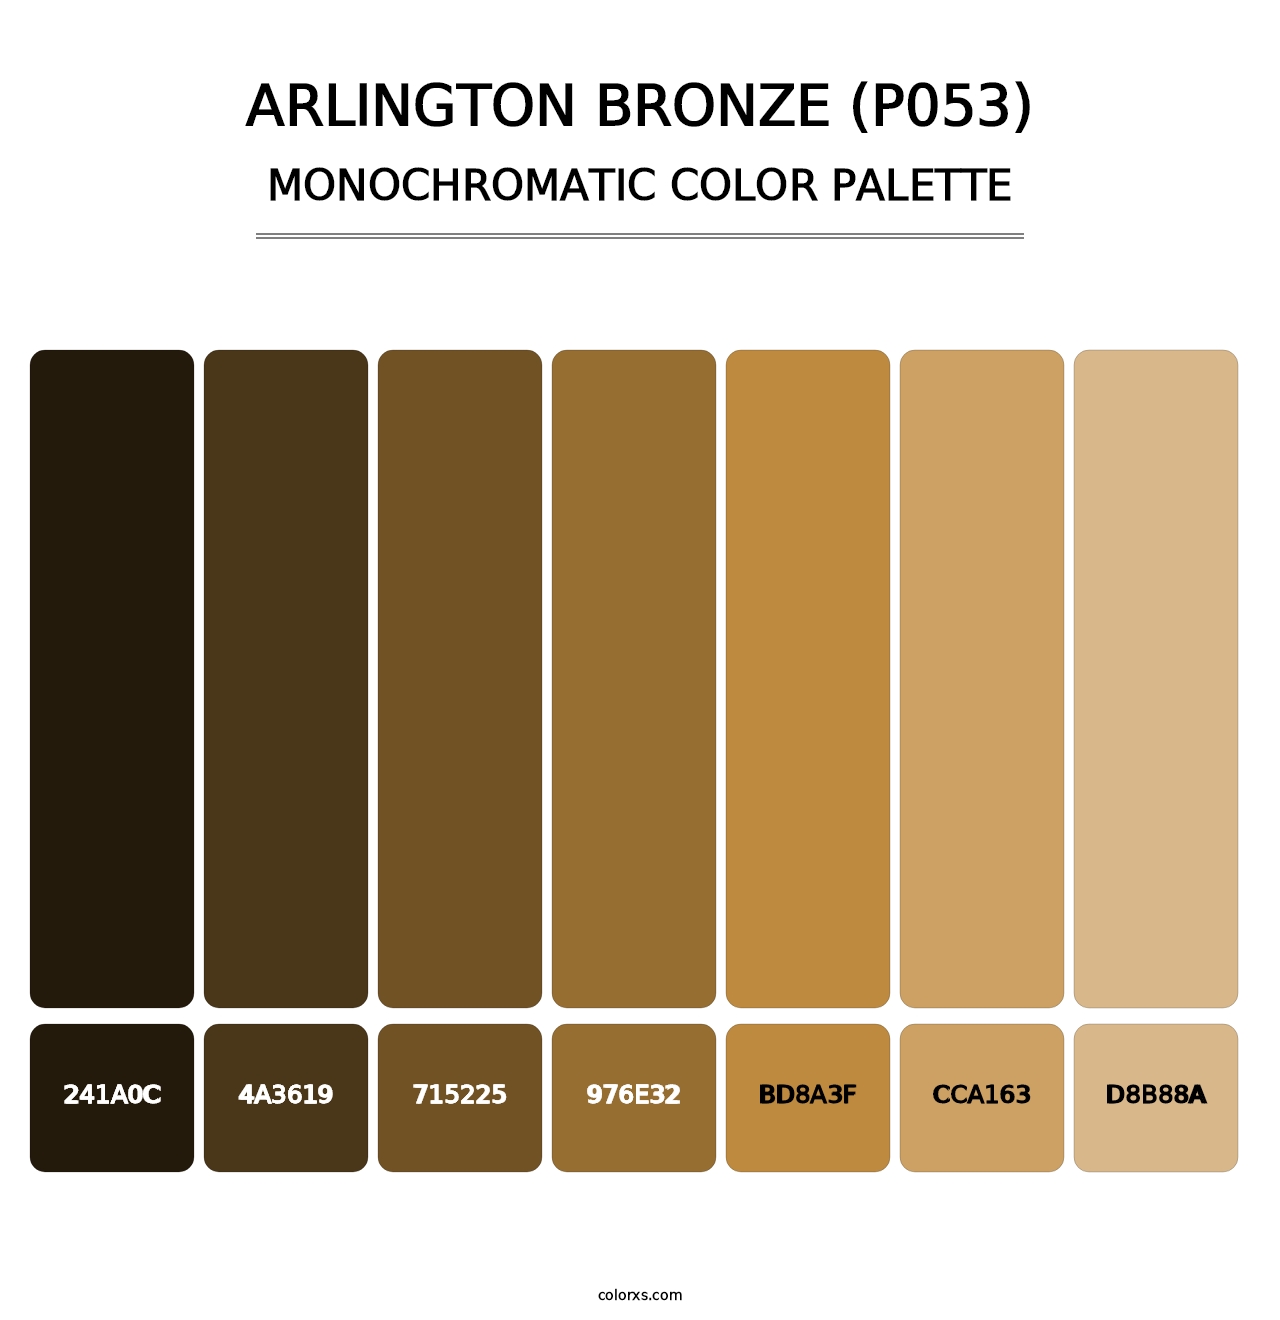 Arlington Bronze (P053) - Monochromatic Color Palette